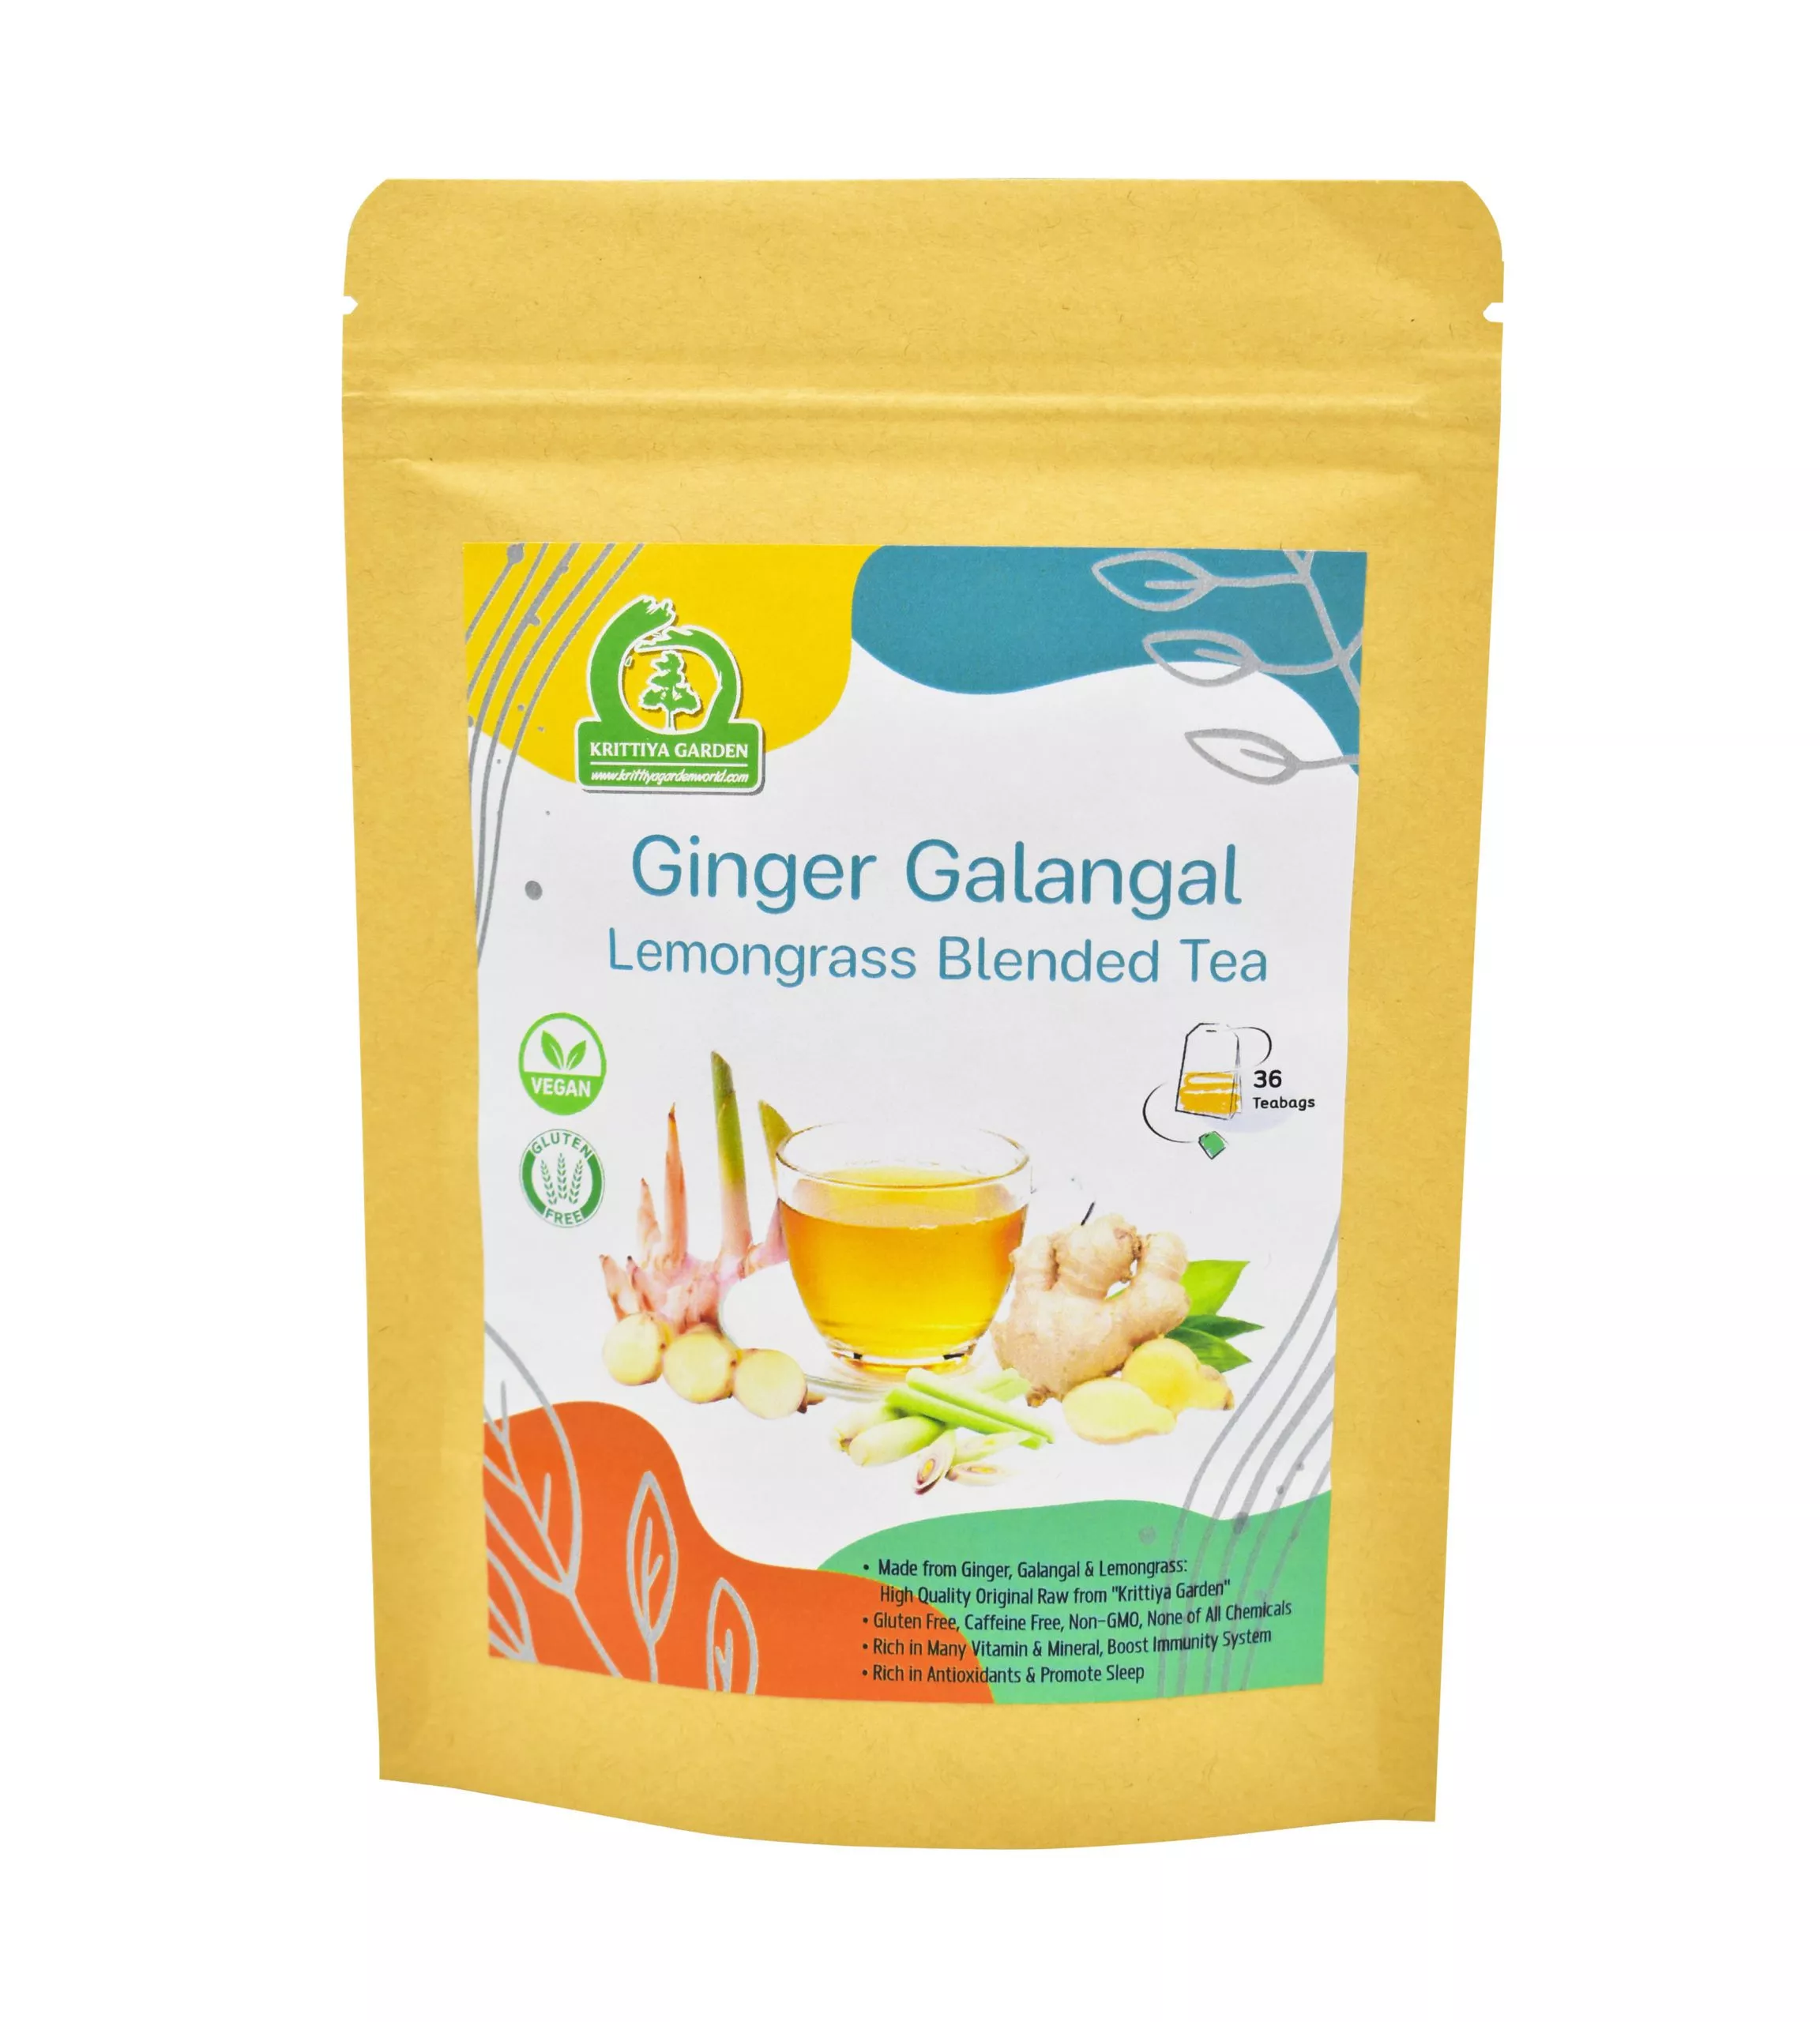 Ginger Galangal Lemongrass Blended Tea